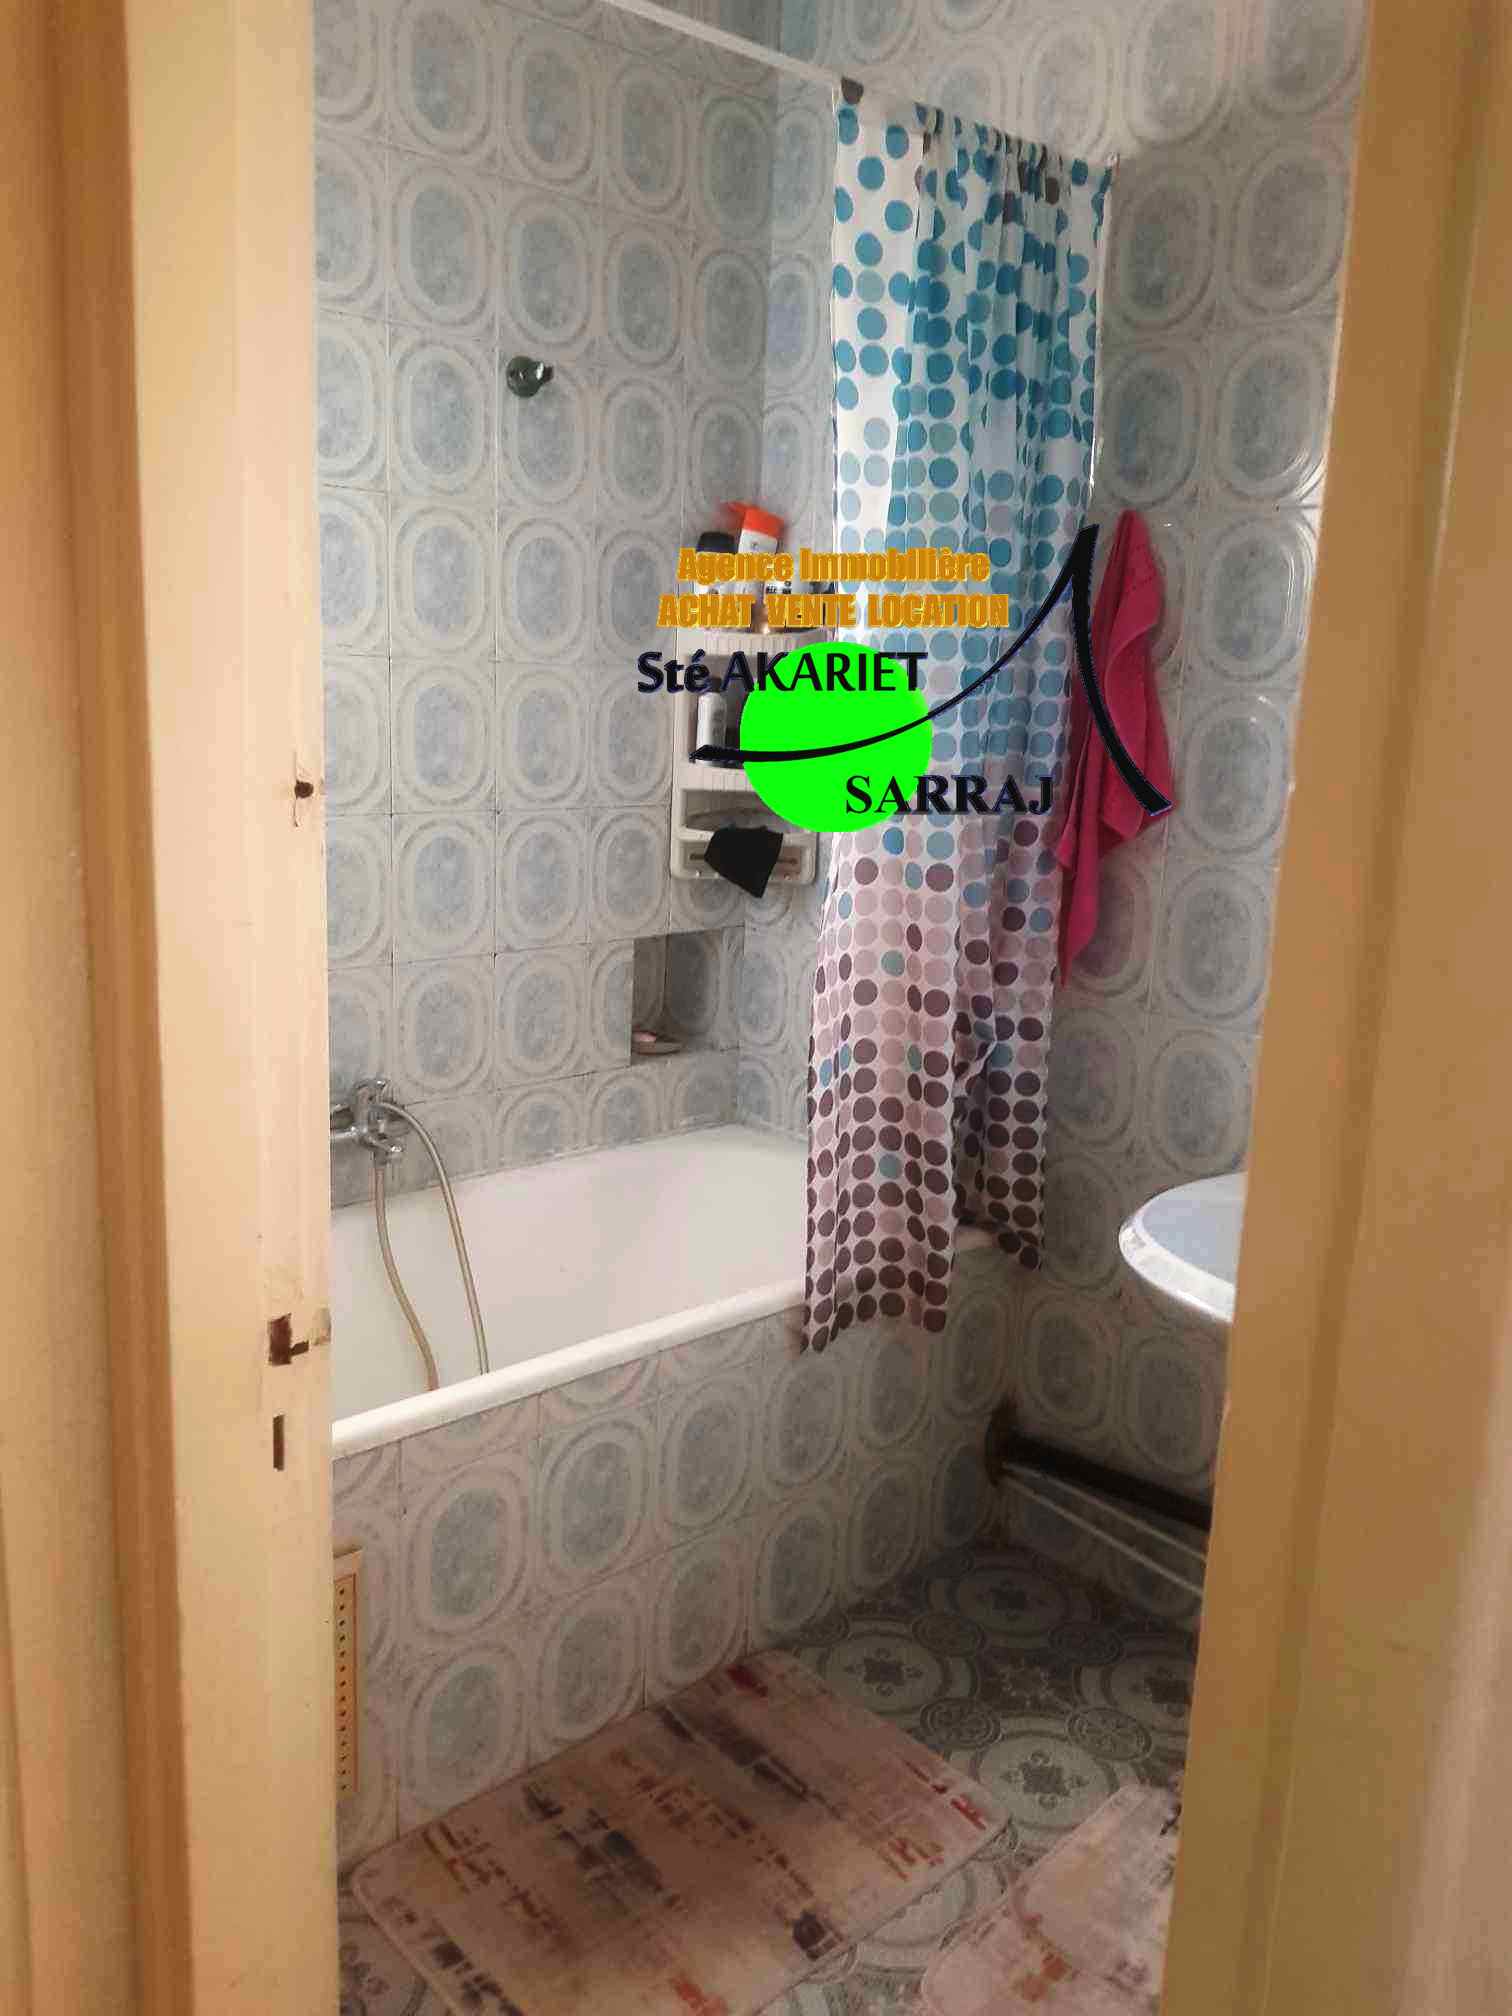 Sousse Jaouhara Sousse Khezama Vente Appart. 3 pices Opportunit appartement pas loin carrefour market